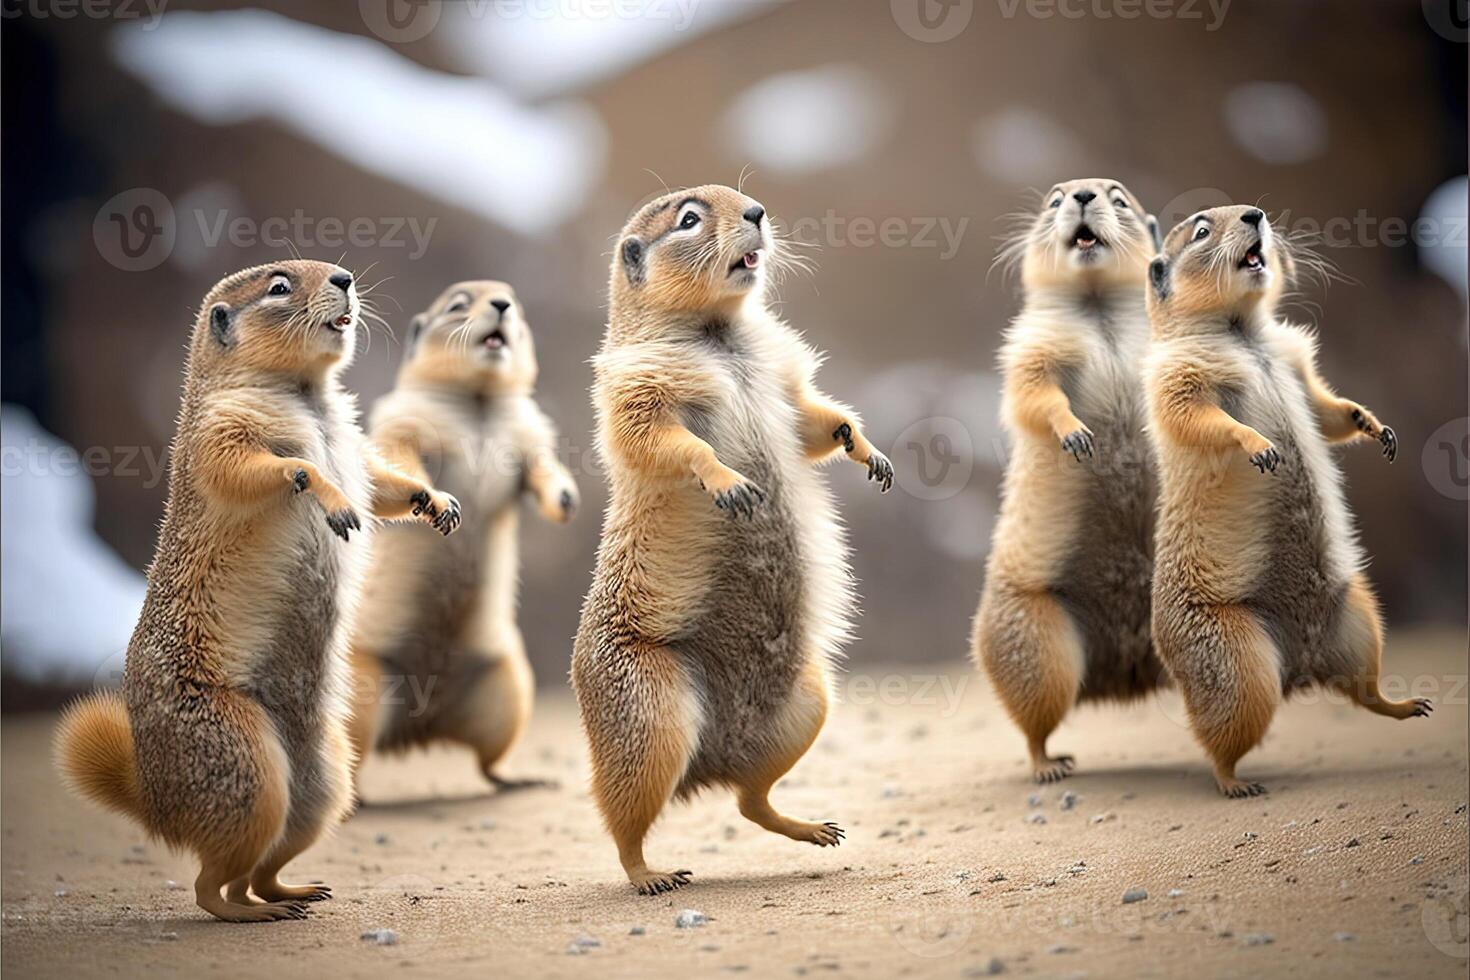 many marmots dancing for Groundhog Day. marmot celebration 2 February illustration photo